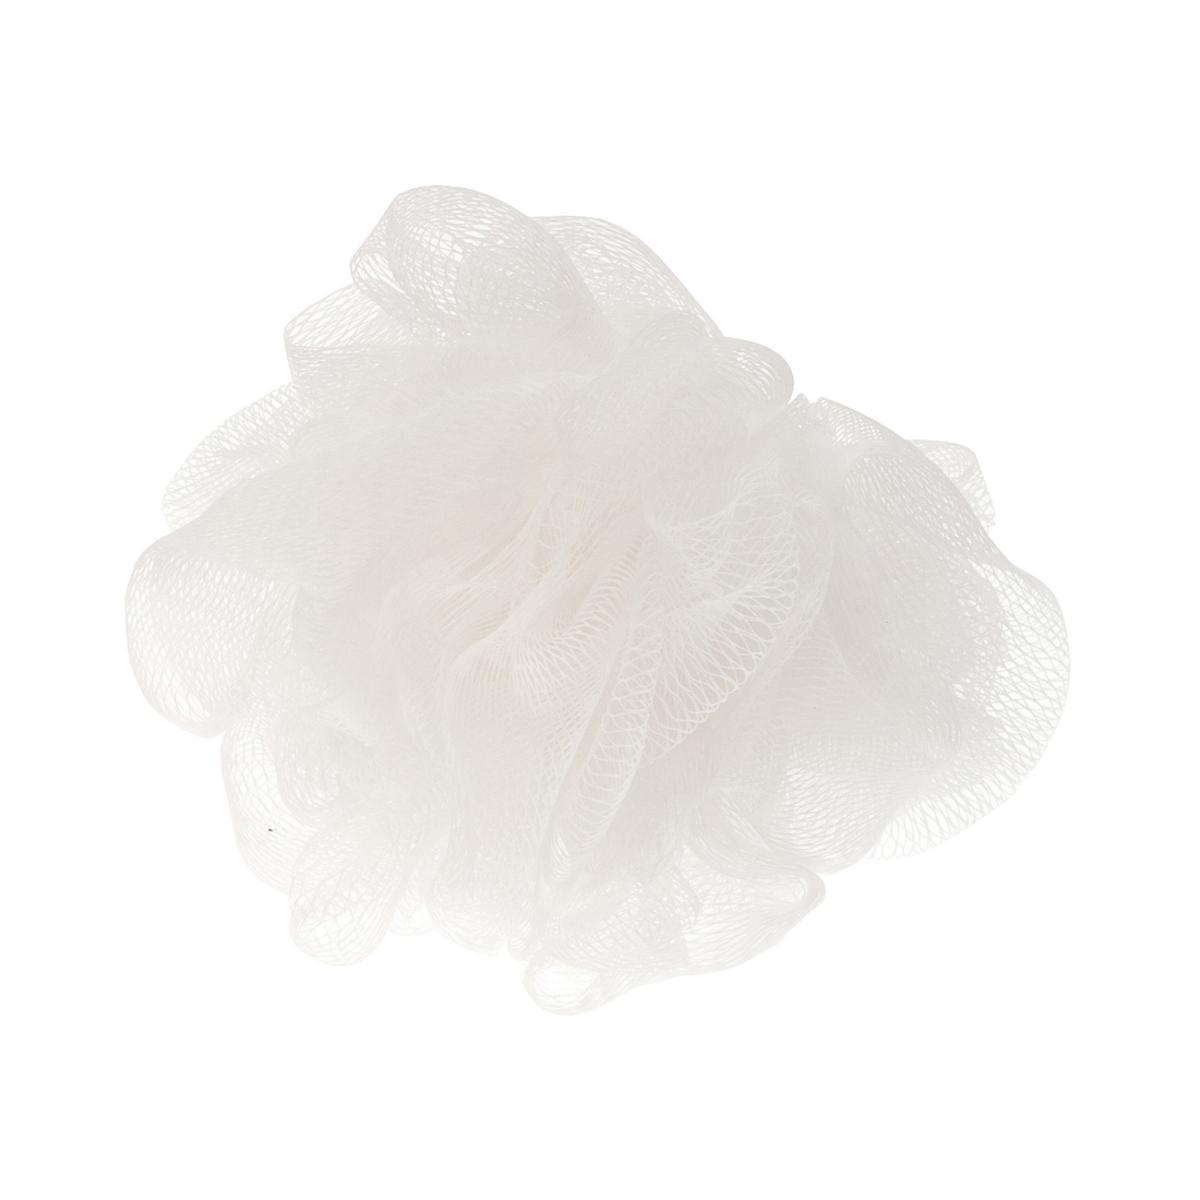 Fleur de douche - ø 13 x l 9 cm - Blanc